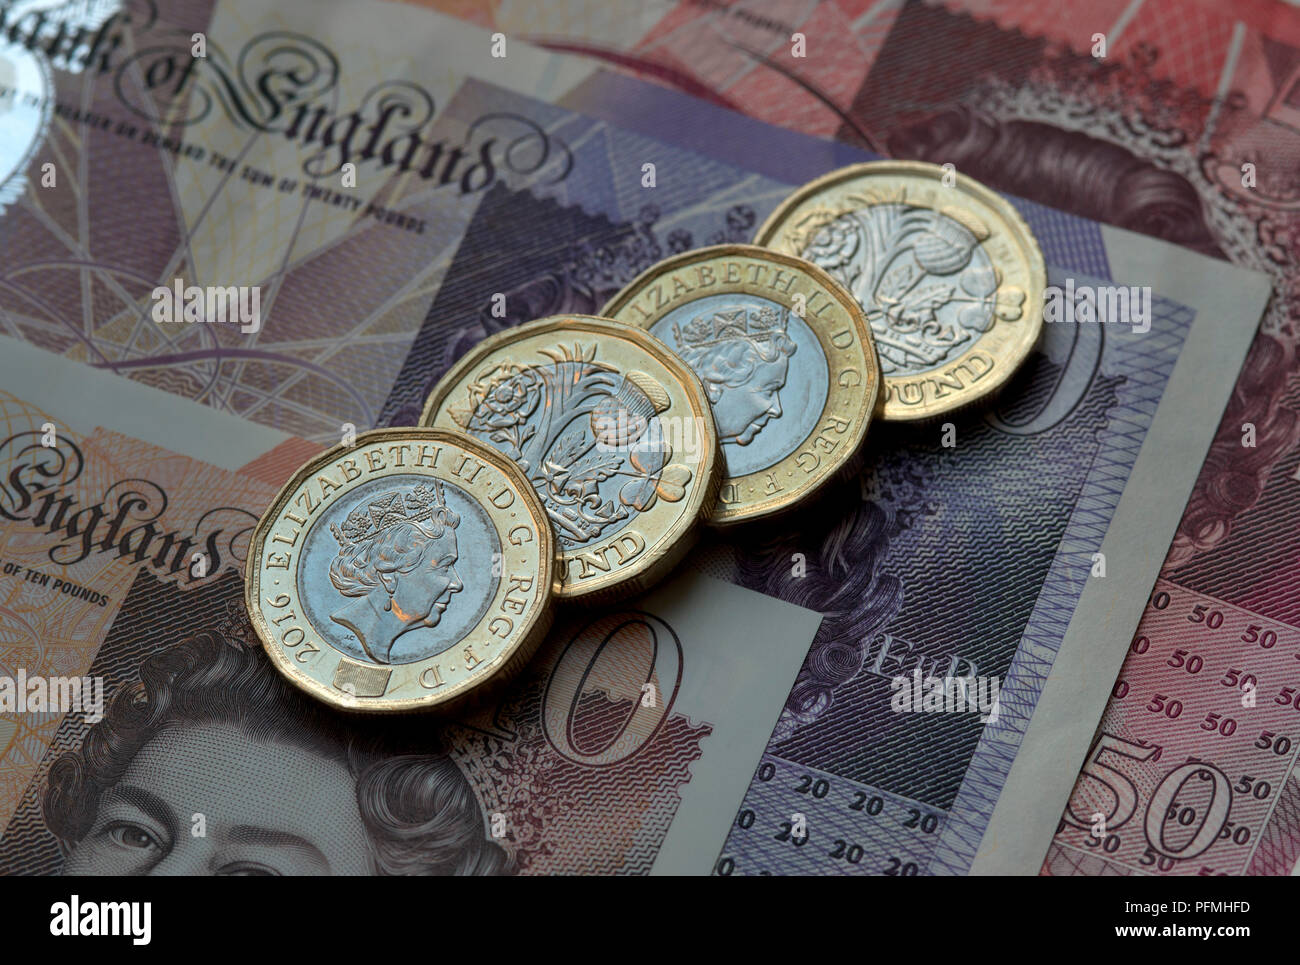 New British (GBP) pound monete in appoggio su £50, £20, £10 pound note. Foto Stock